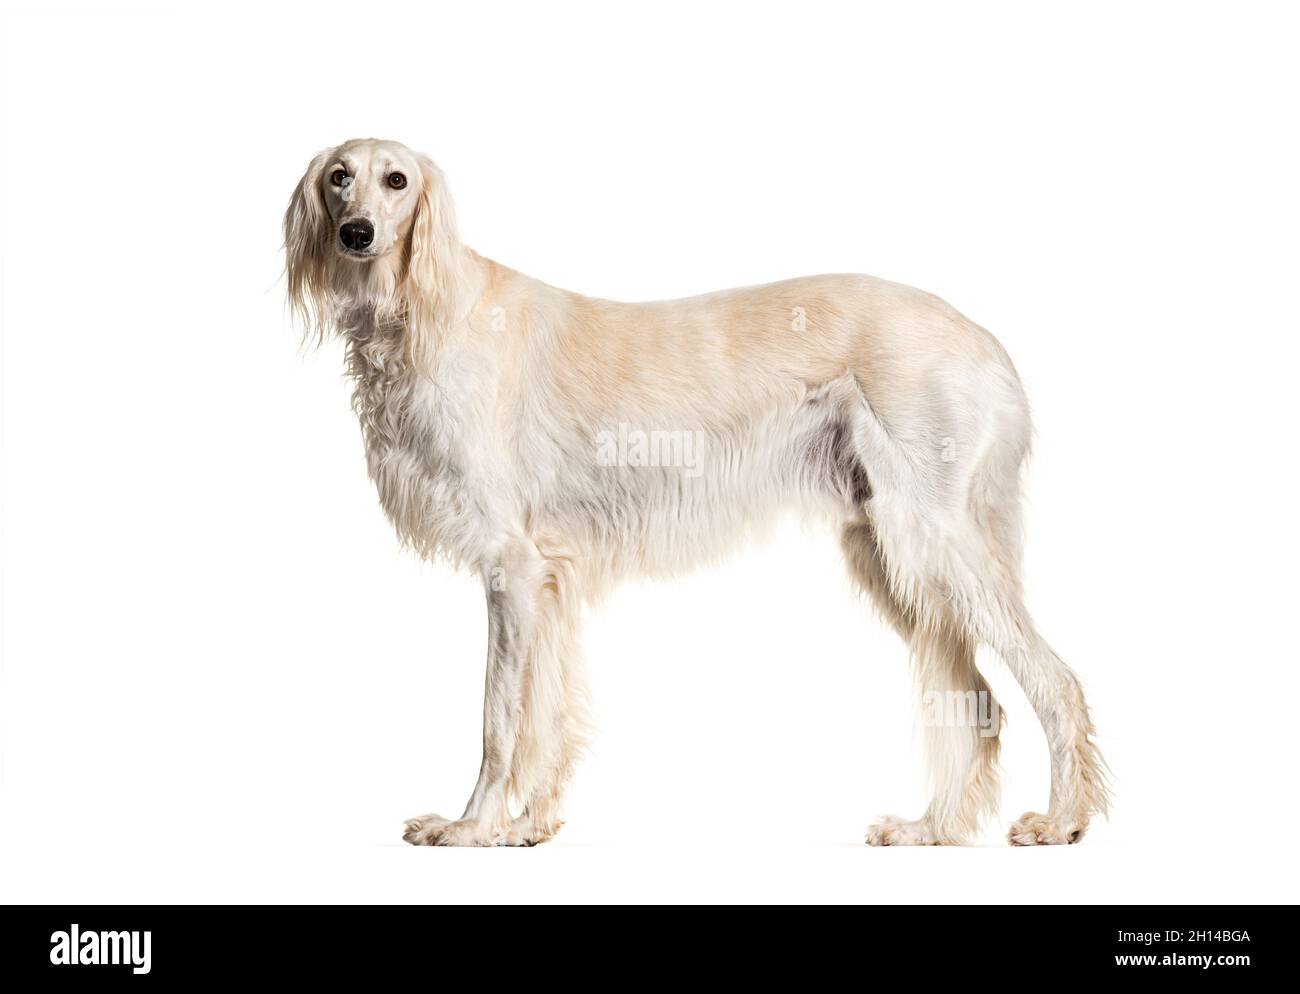 Portrait de profil de chien gris Saluki debout et regardant l'appareil photo, isolé sur blanc Banque D'Images